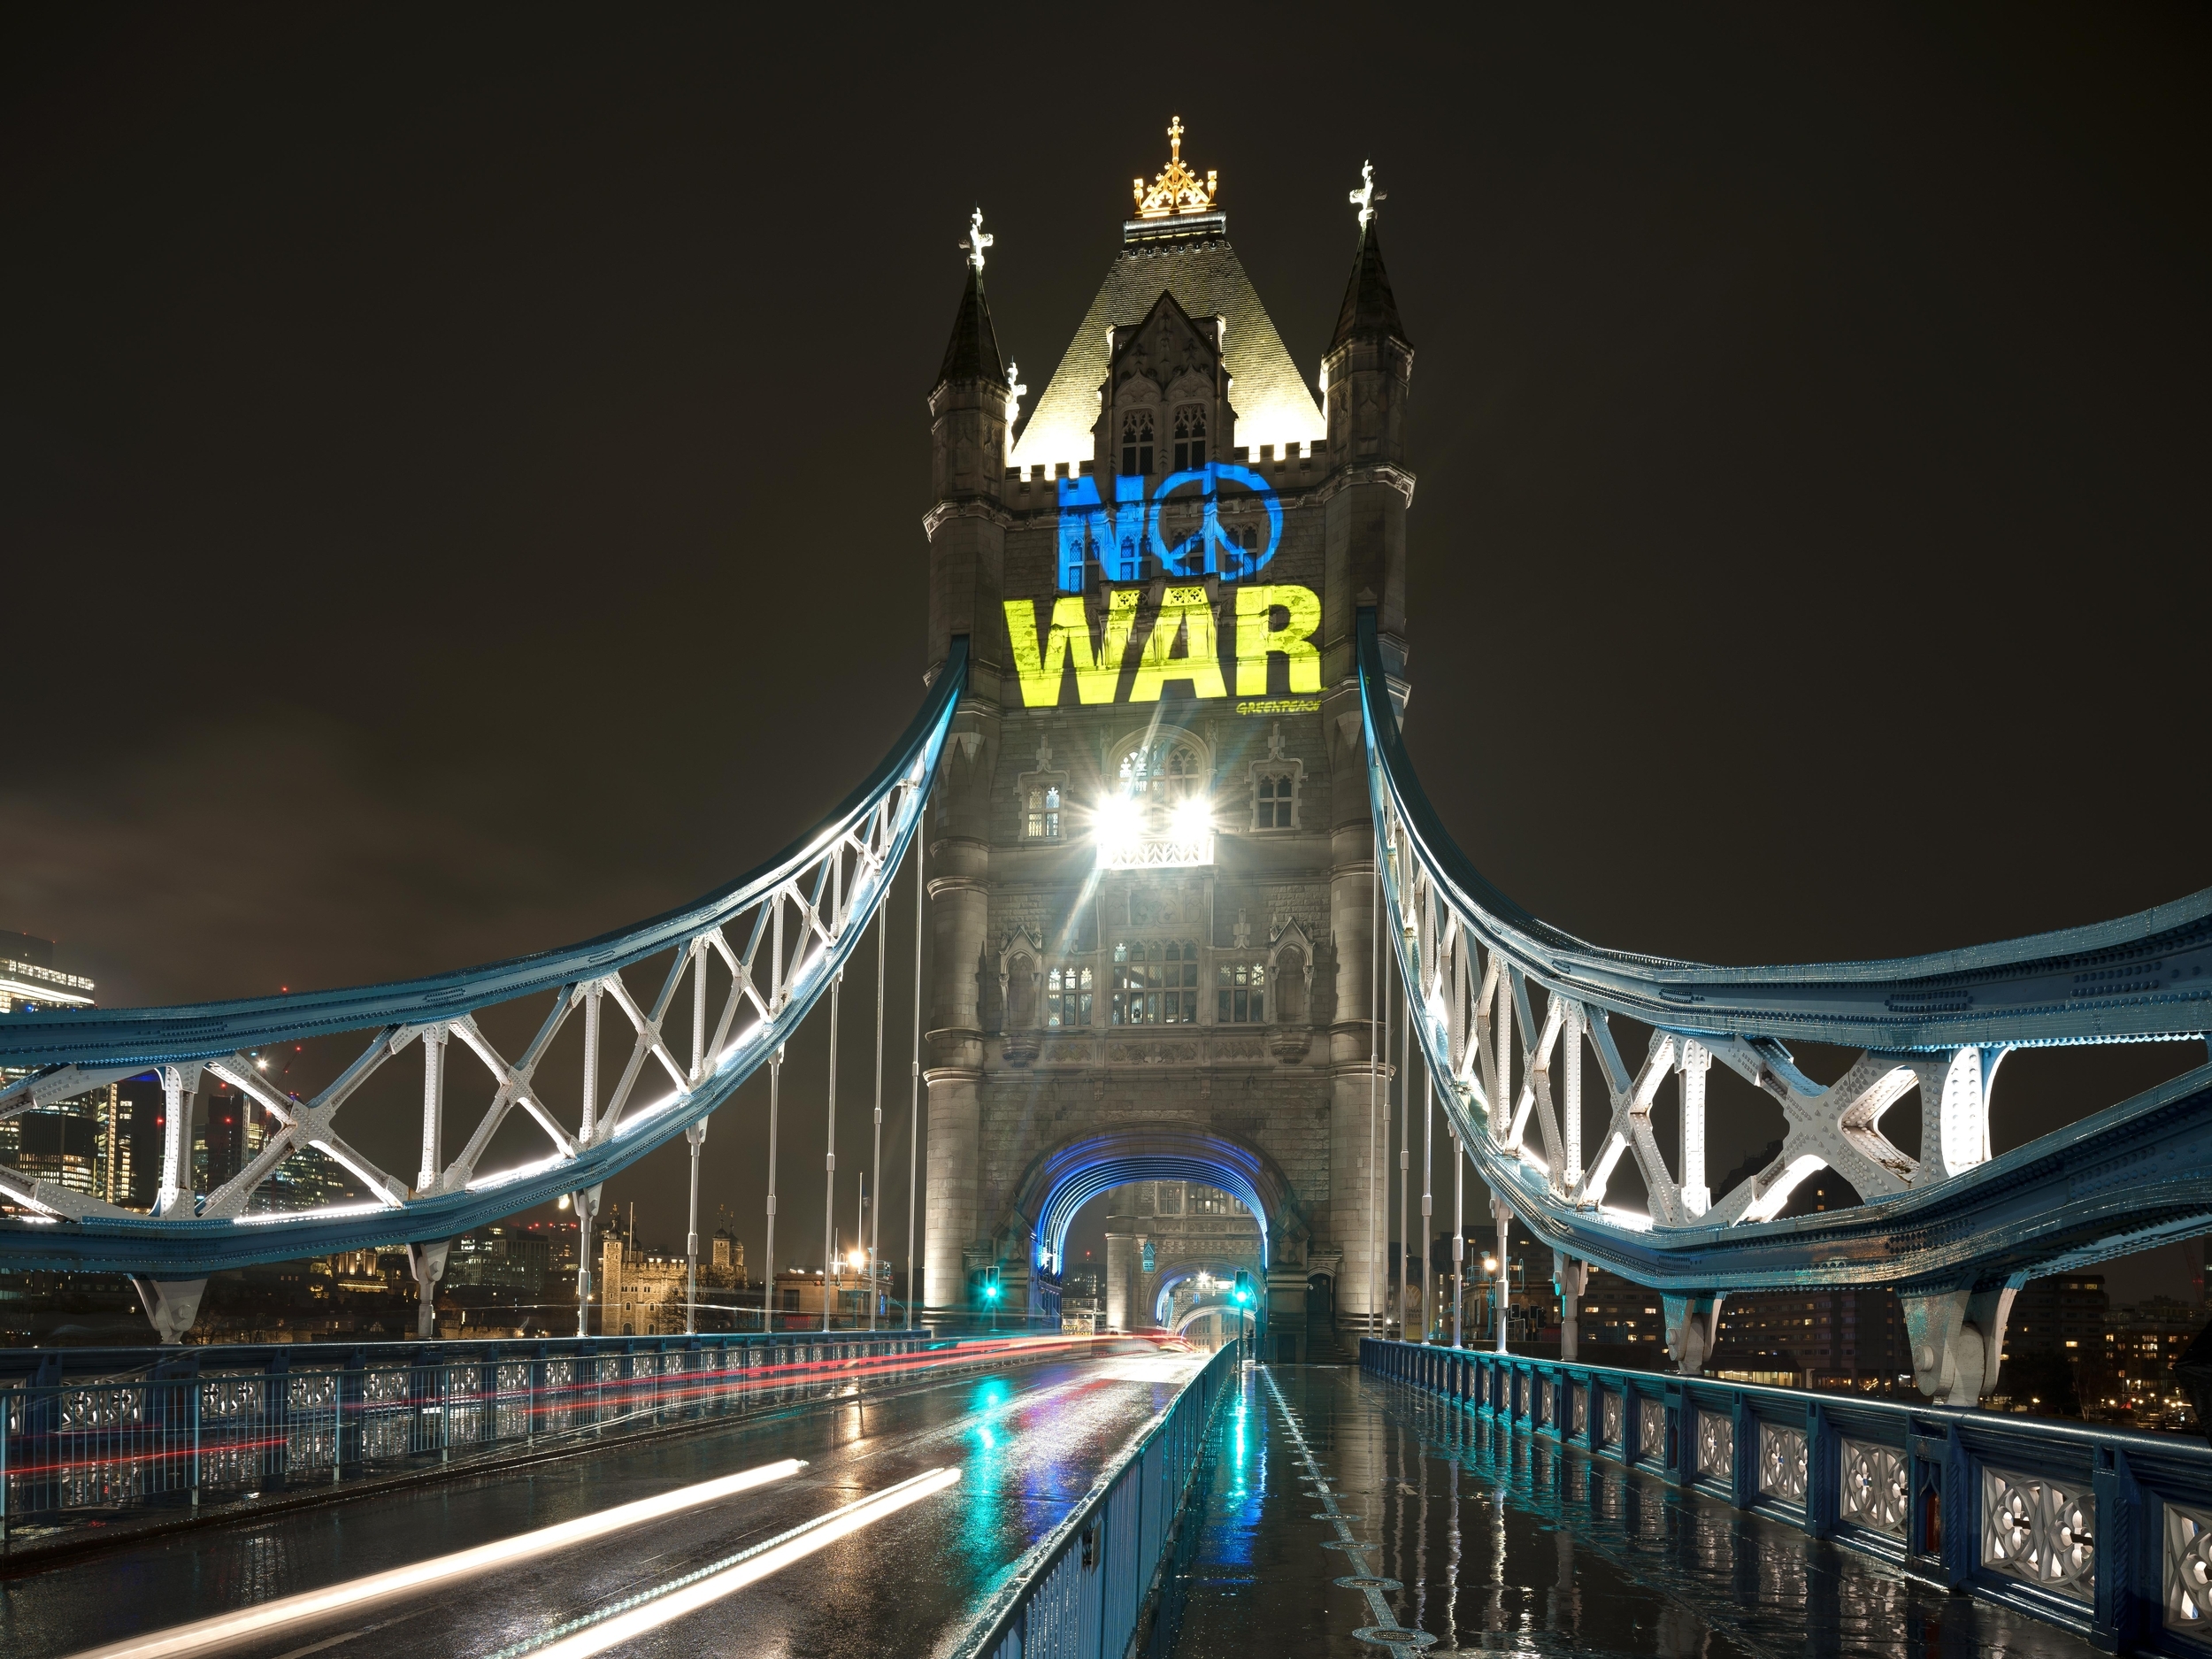 Greenpeace UK proyectó mensajes de paz en el puente de la torre en Londres. © POW / Greenpeace